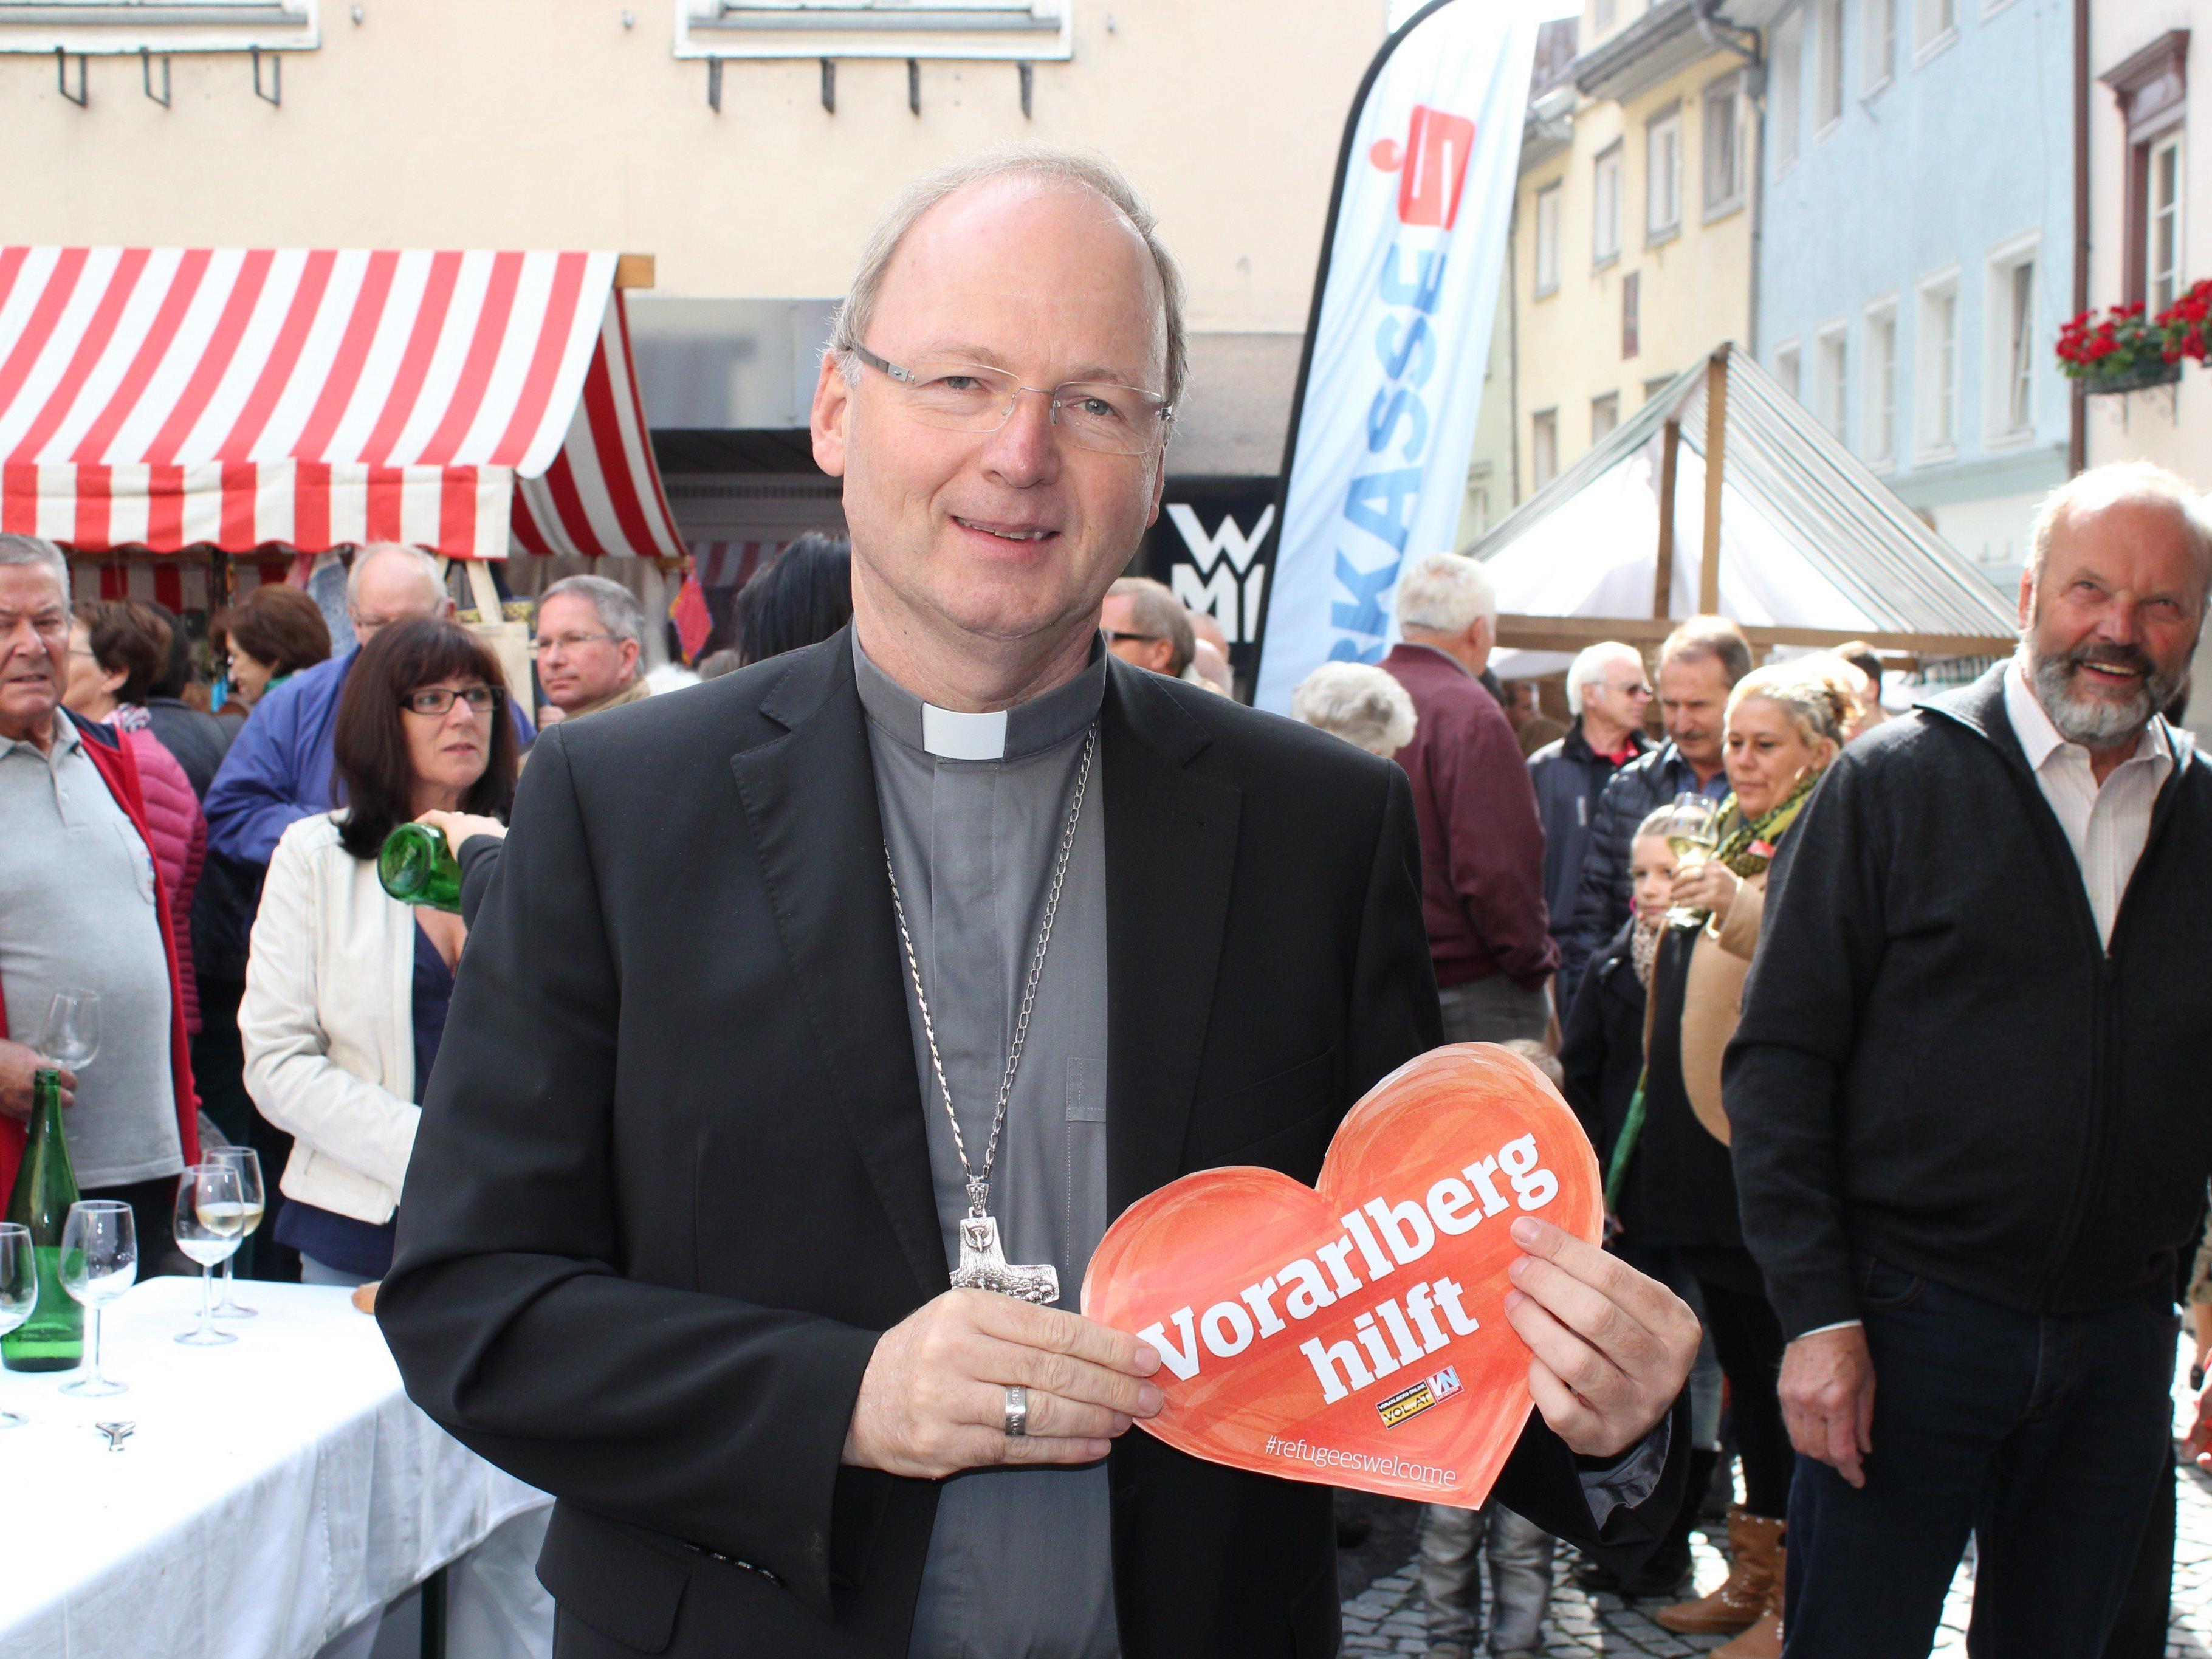 Auch Bischof Benno Elbs unterstützt die Aktion "Vorarlberg hilft".